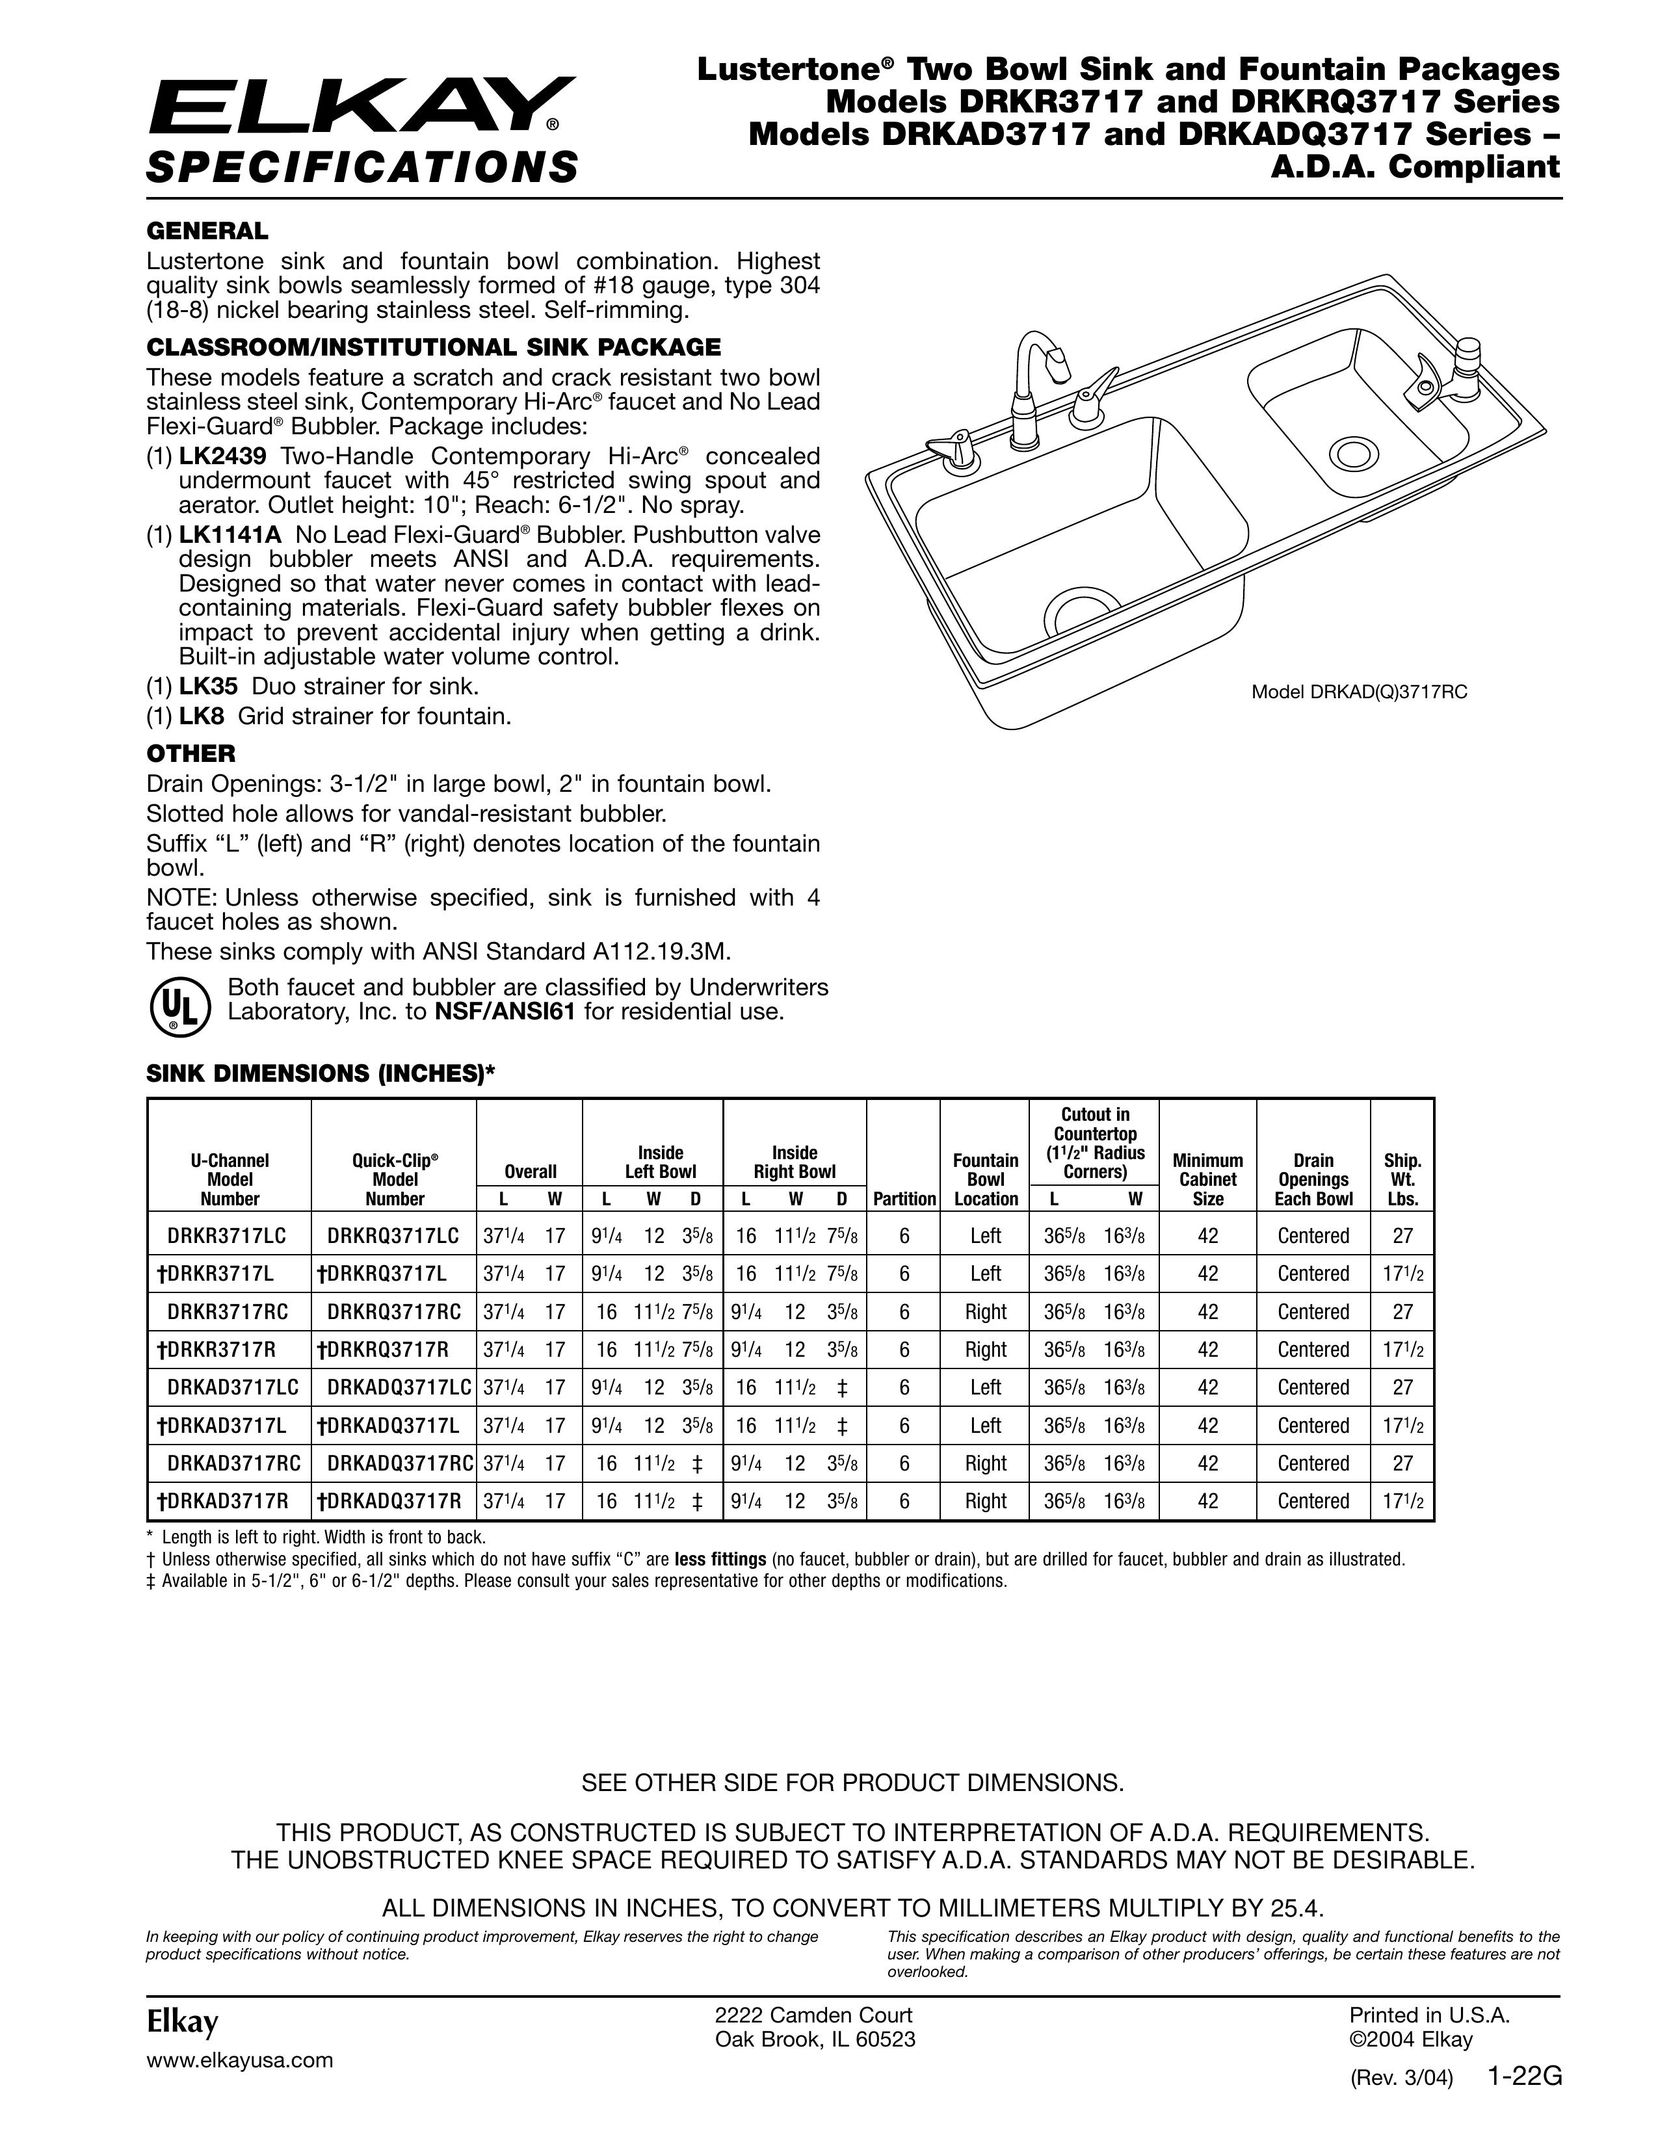 Elkay DRKAD3717R Indoor Furnishings User Manual